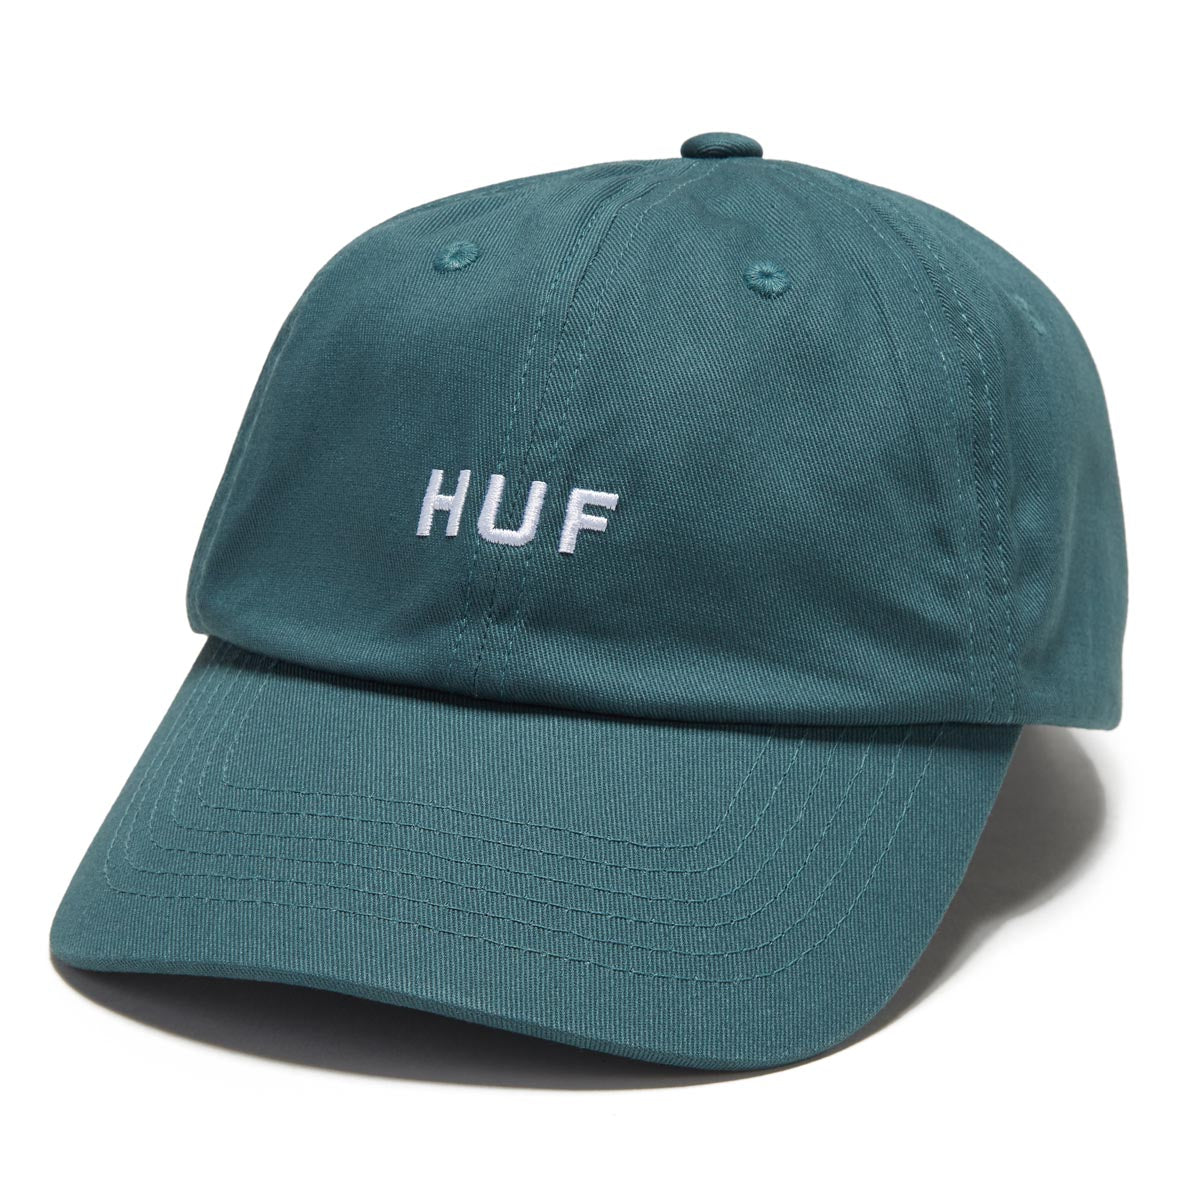 HUF Set Og Cv 6 Panel Hat - Sage image 1